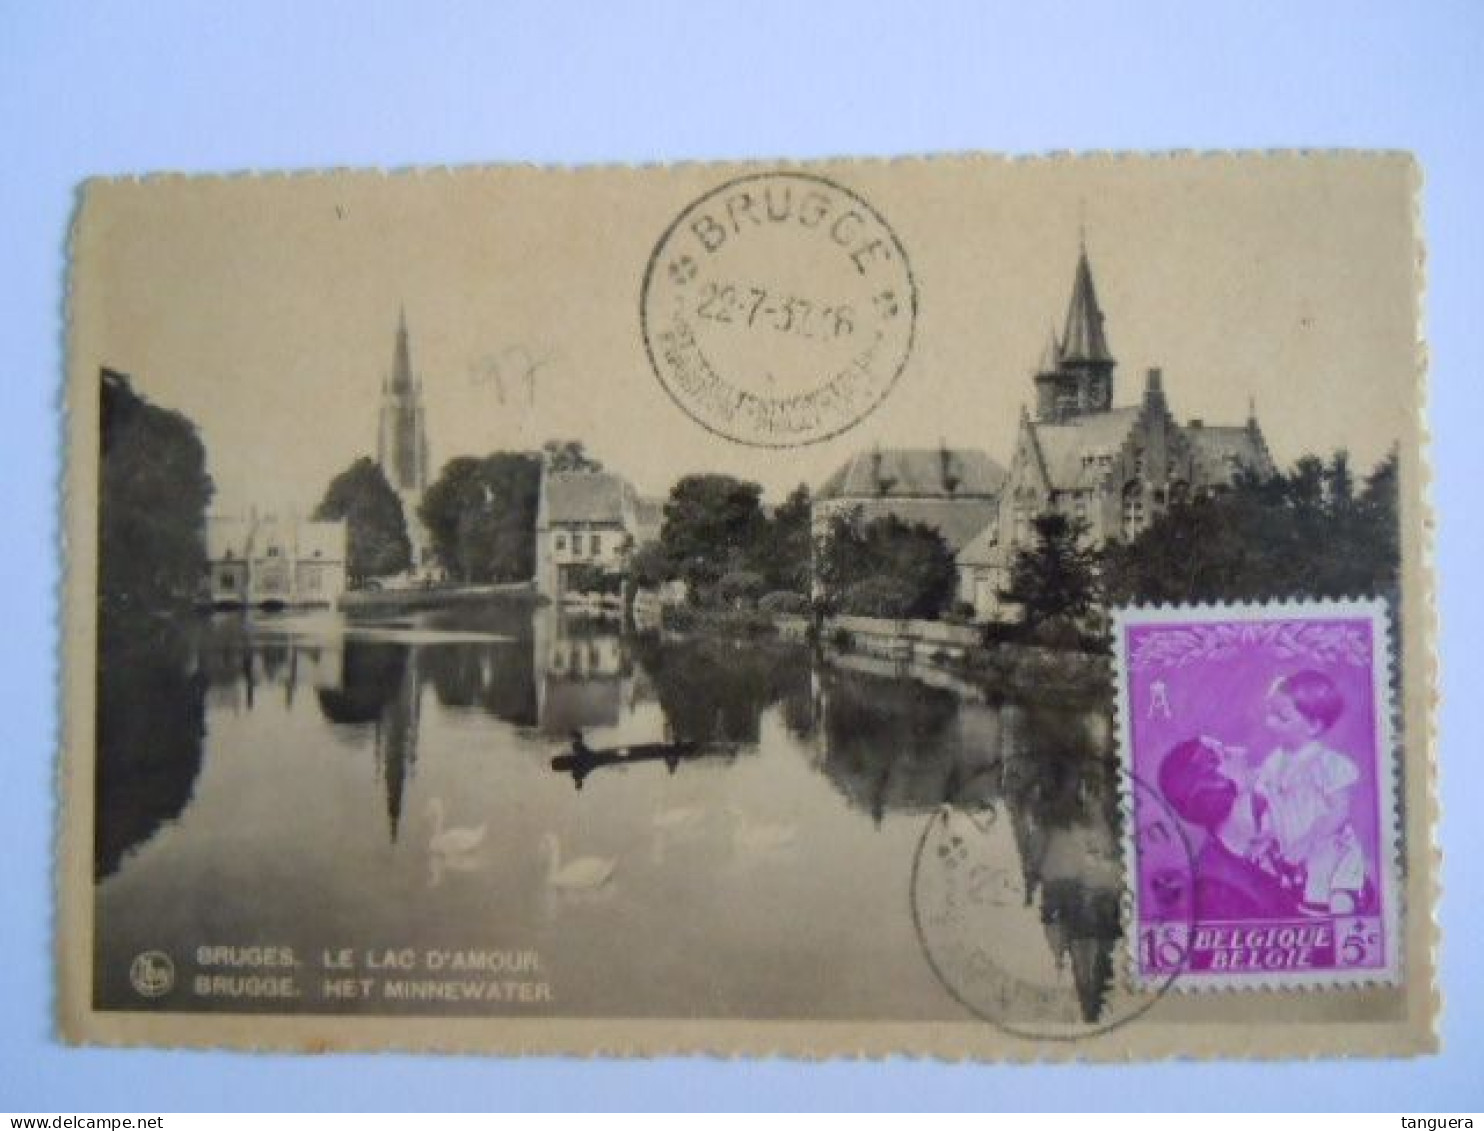 Belgie Reine Koningin Astrid 1937 Cob 447 Op Sur Cp Brugge Le Lac D'amour Het Minnewater (703) - Covers & Documents